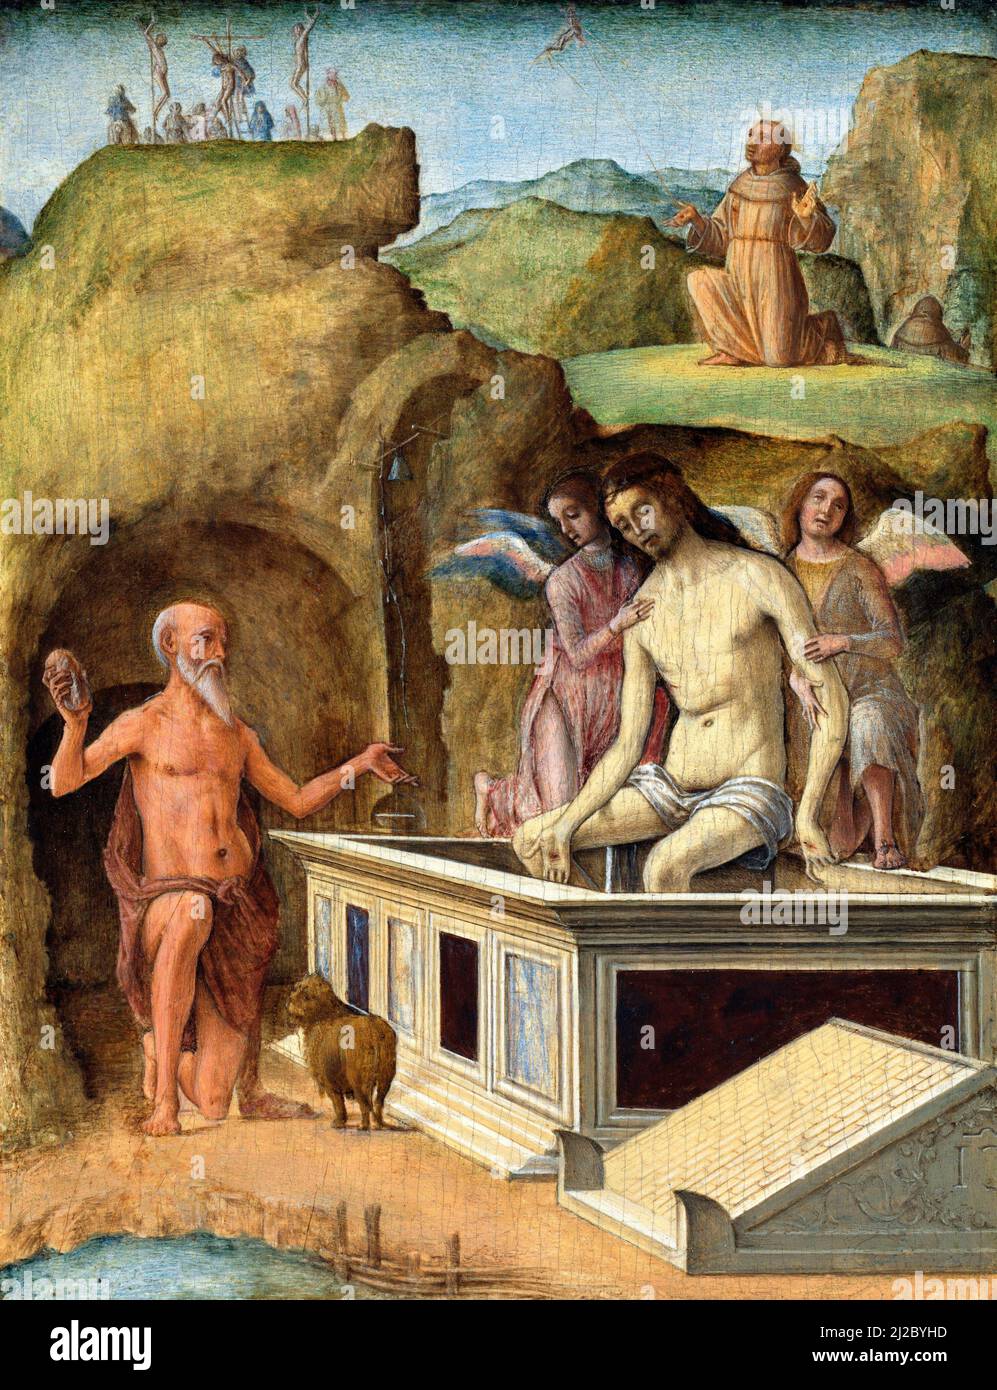 The Dead Christ (un panneau de l'Este diptych) par l'artiste italienne de la Renaissance, Ercole de' Roberti (c. 1451-1496), tempera sur bois, c. 1490 Banque D'Images